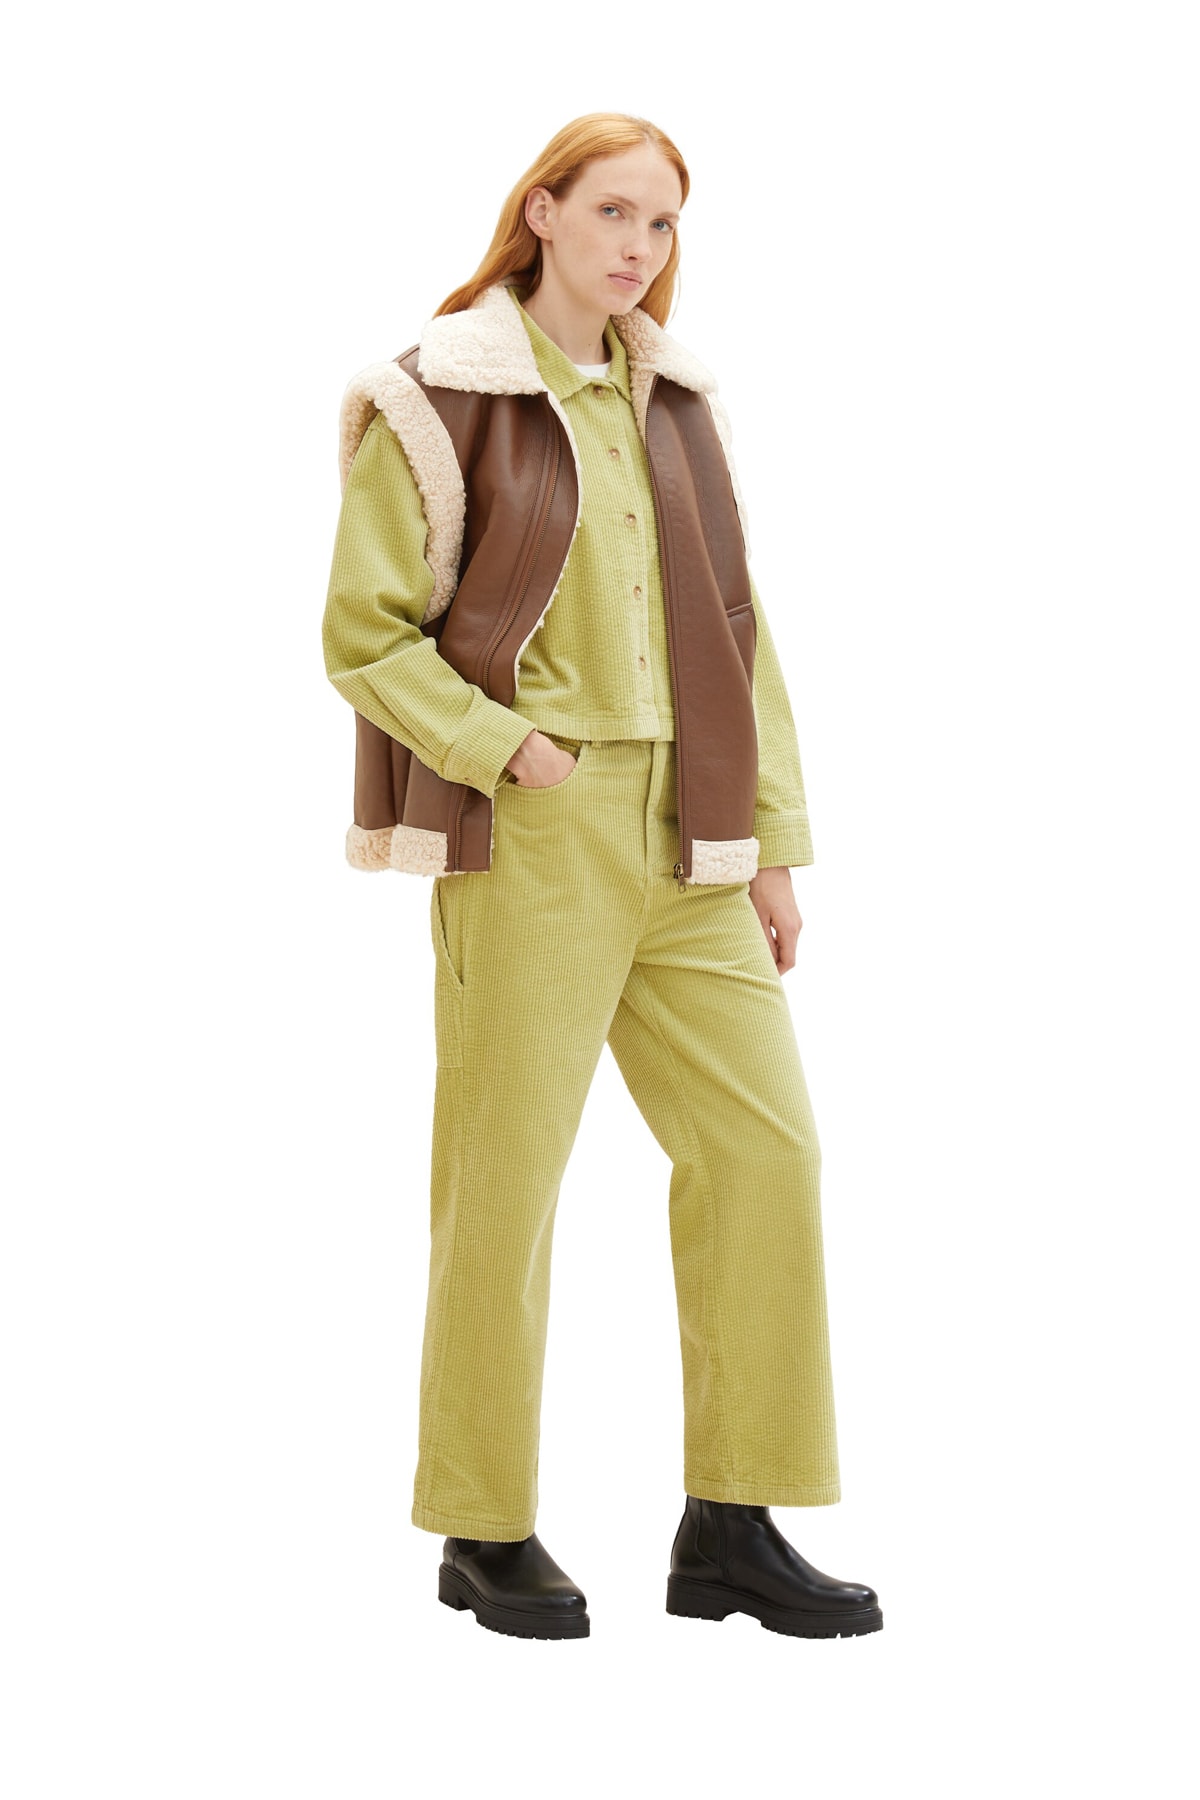 Брюки Женские/Девочки шнуровые брюки Carpender Tom Tailor Denim, оранжевый футболка tom tailor хлопок размер xl оранжевый